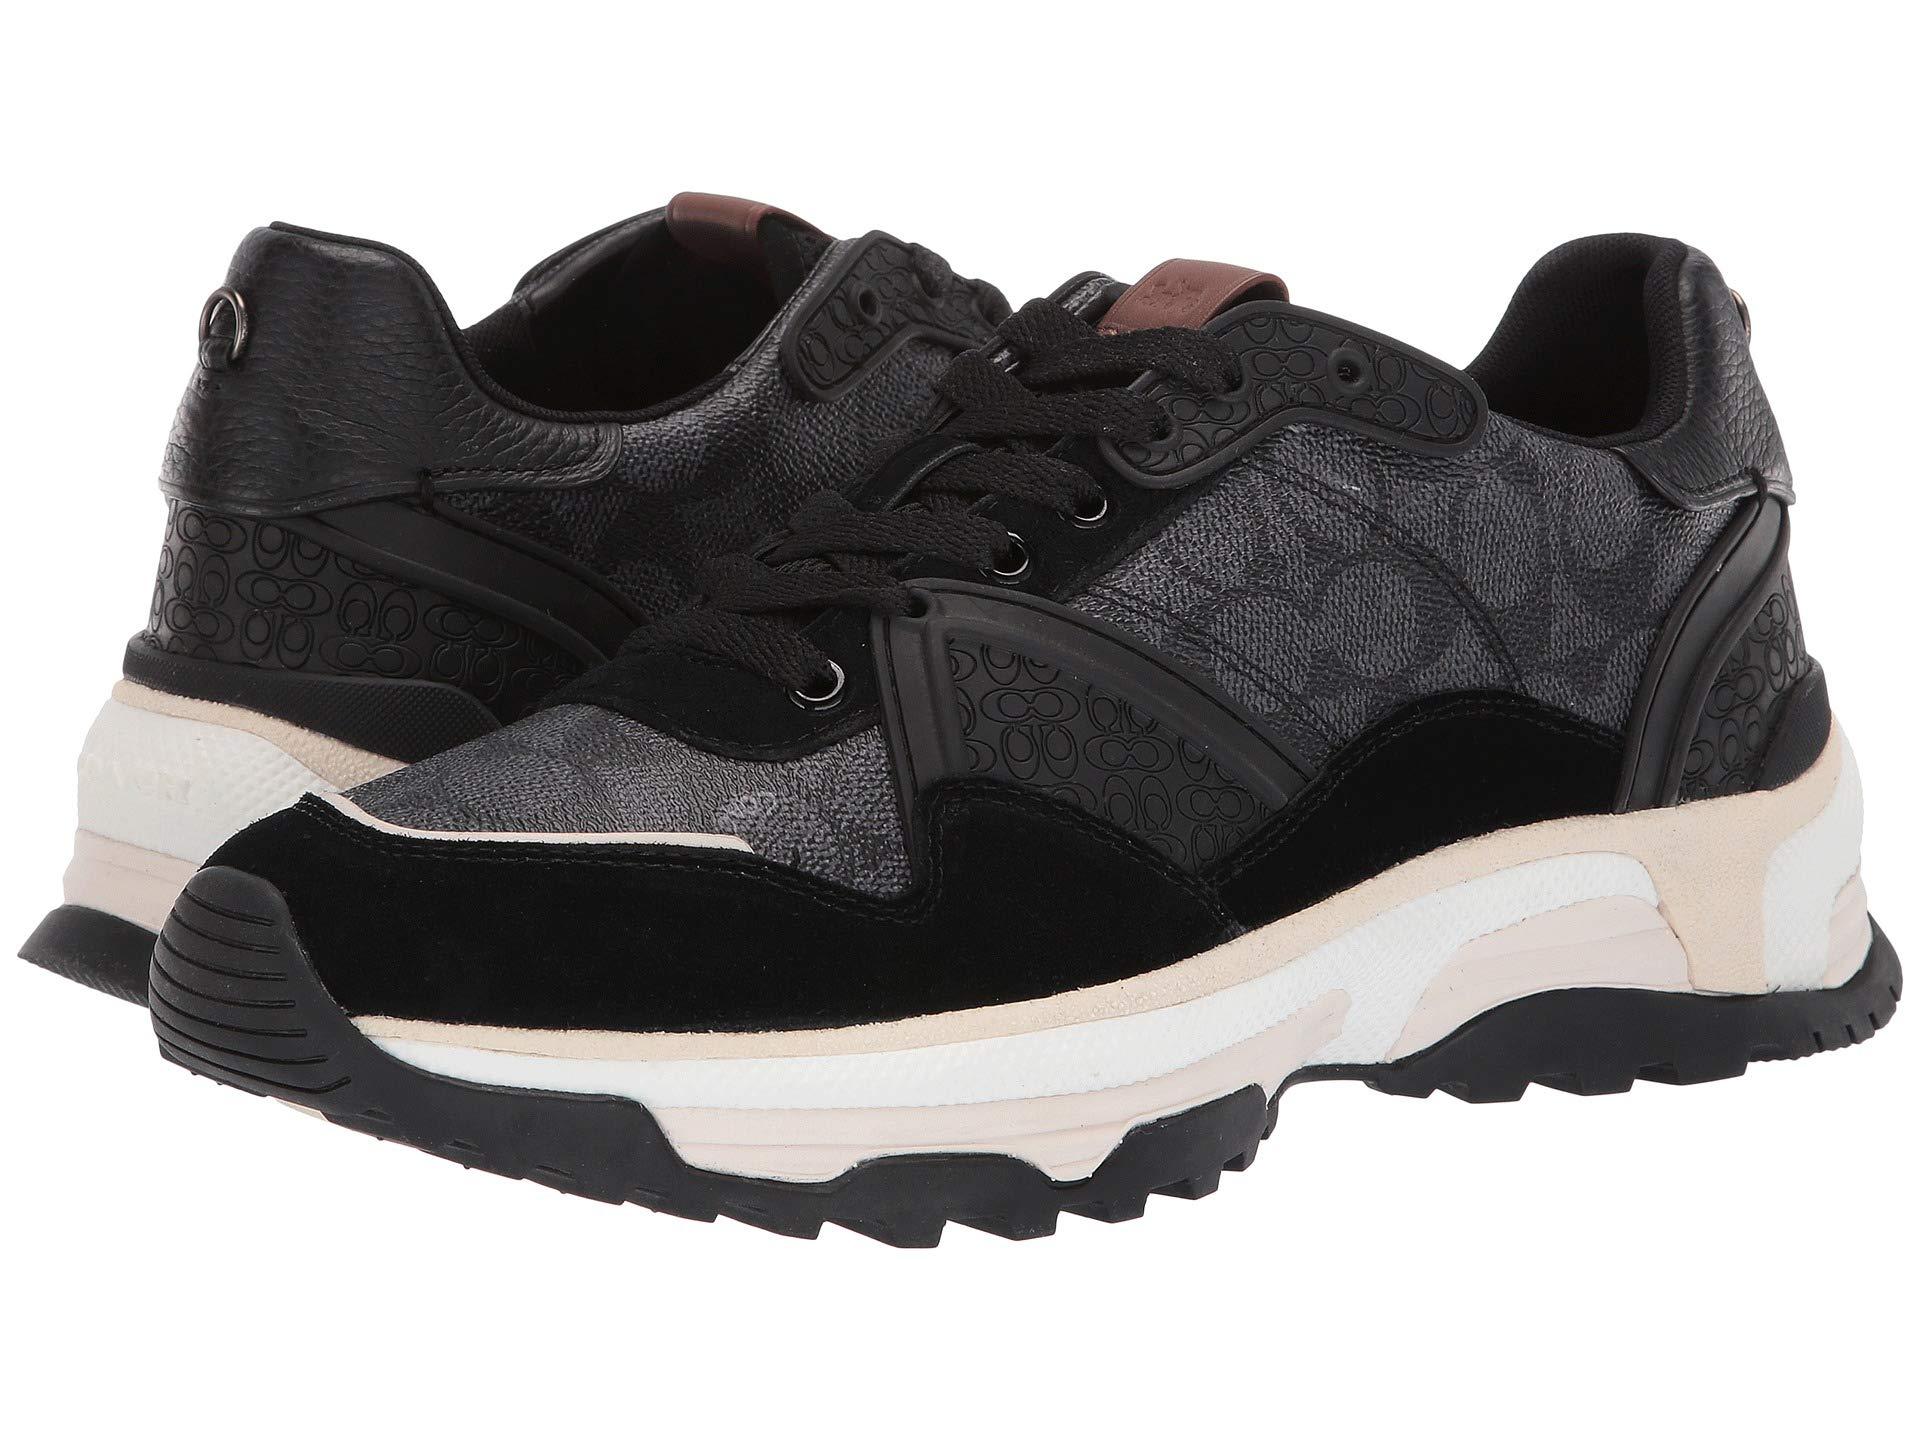 Lyst - COACH C143 Runner (black) Men's Shoes in Black for Men